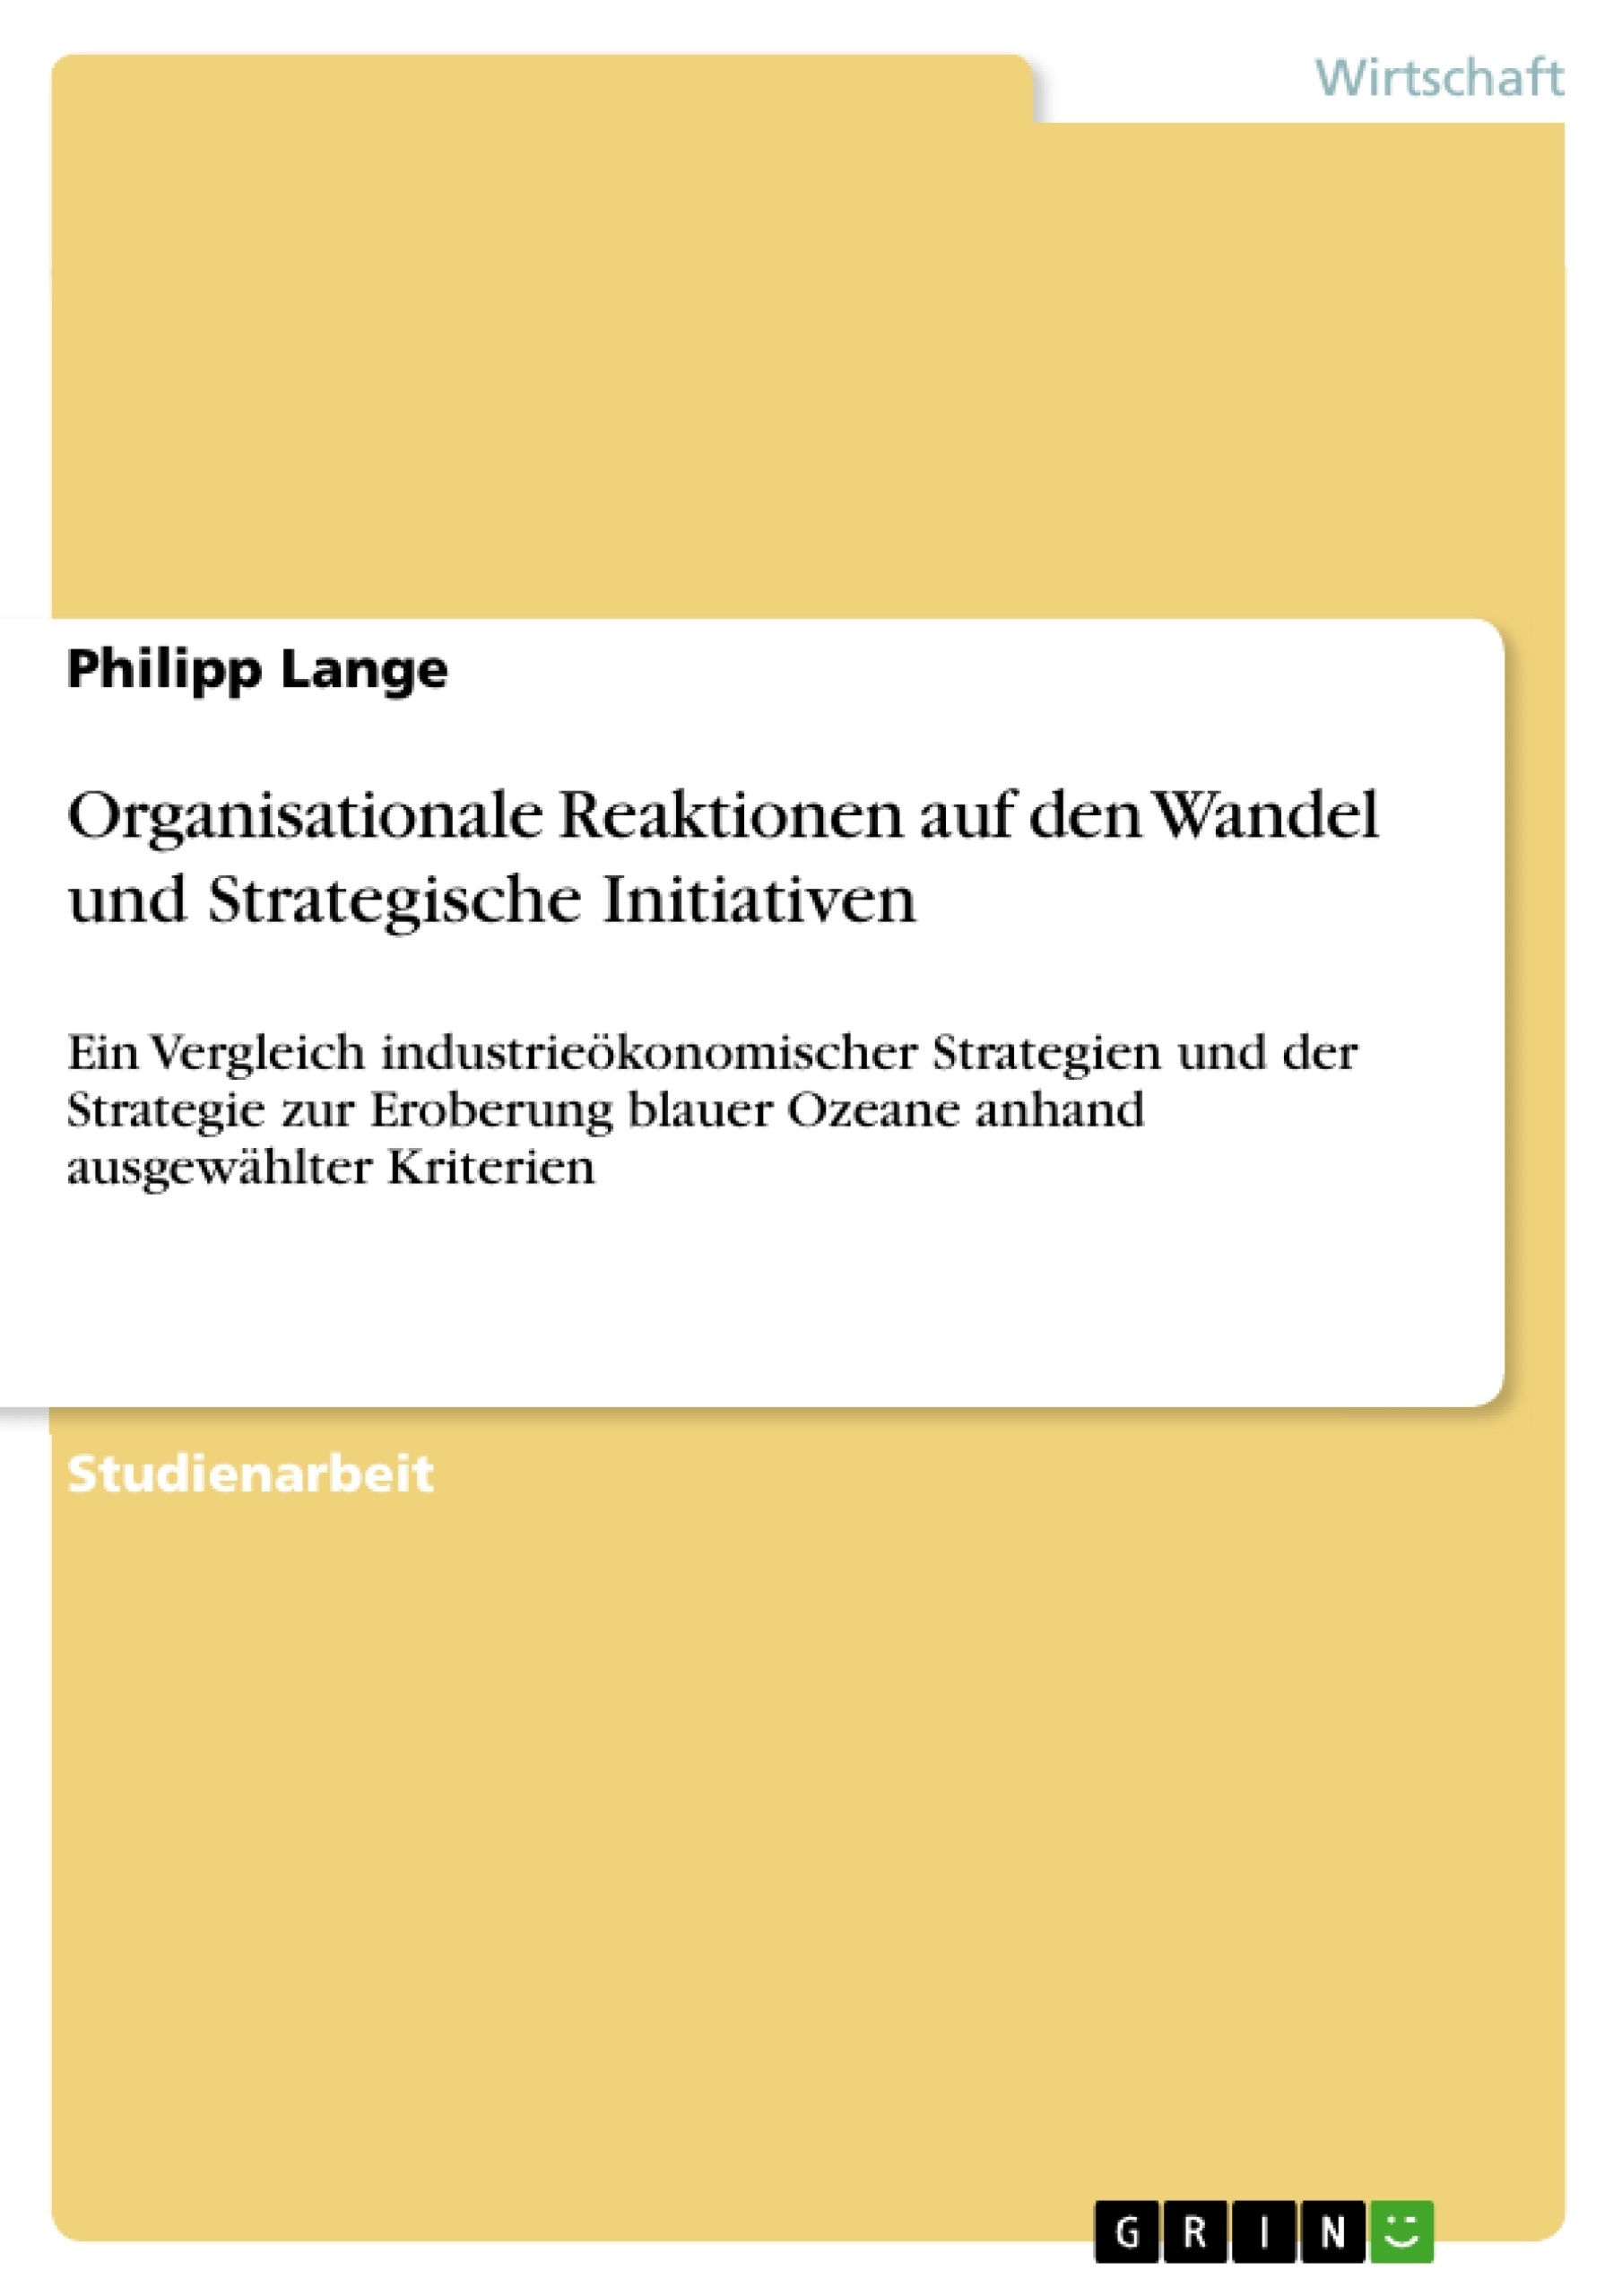 Titel: Organisationale Reaktionen auf den Wandel und Strategische Initiativen